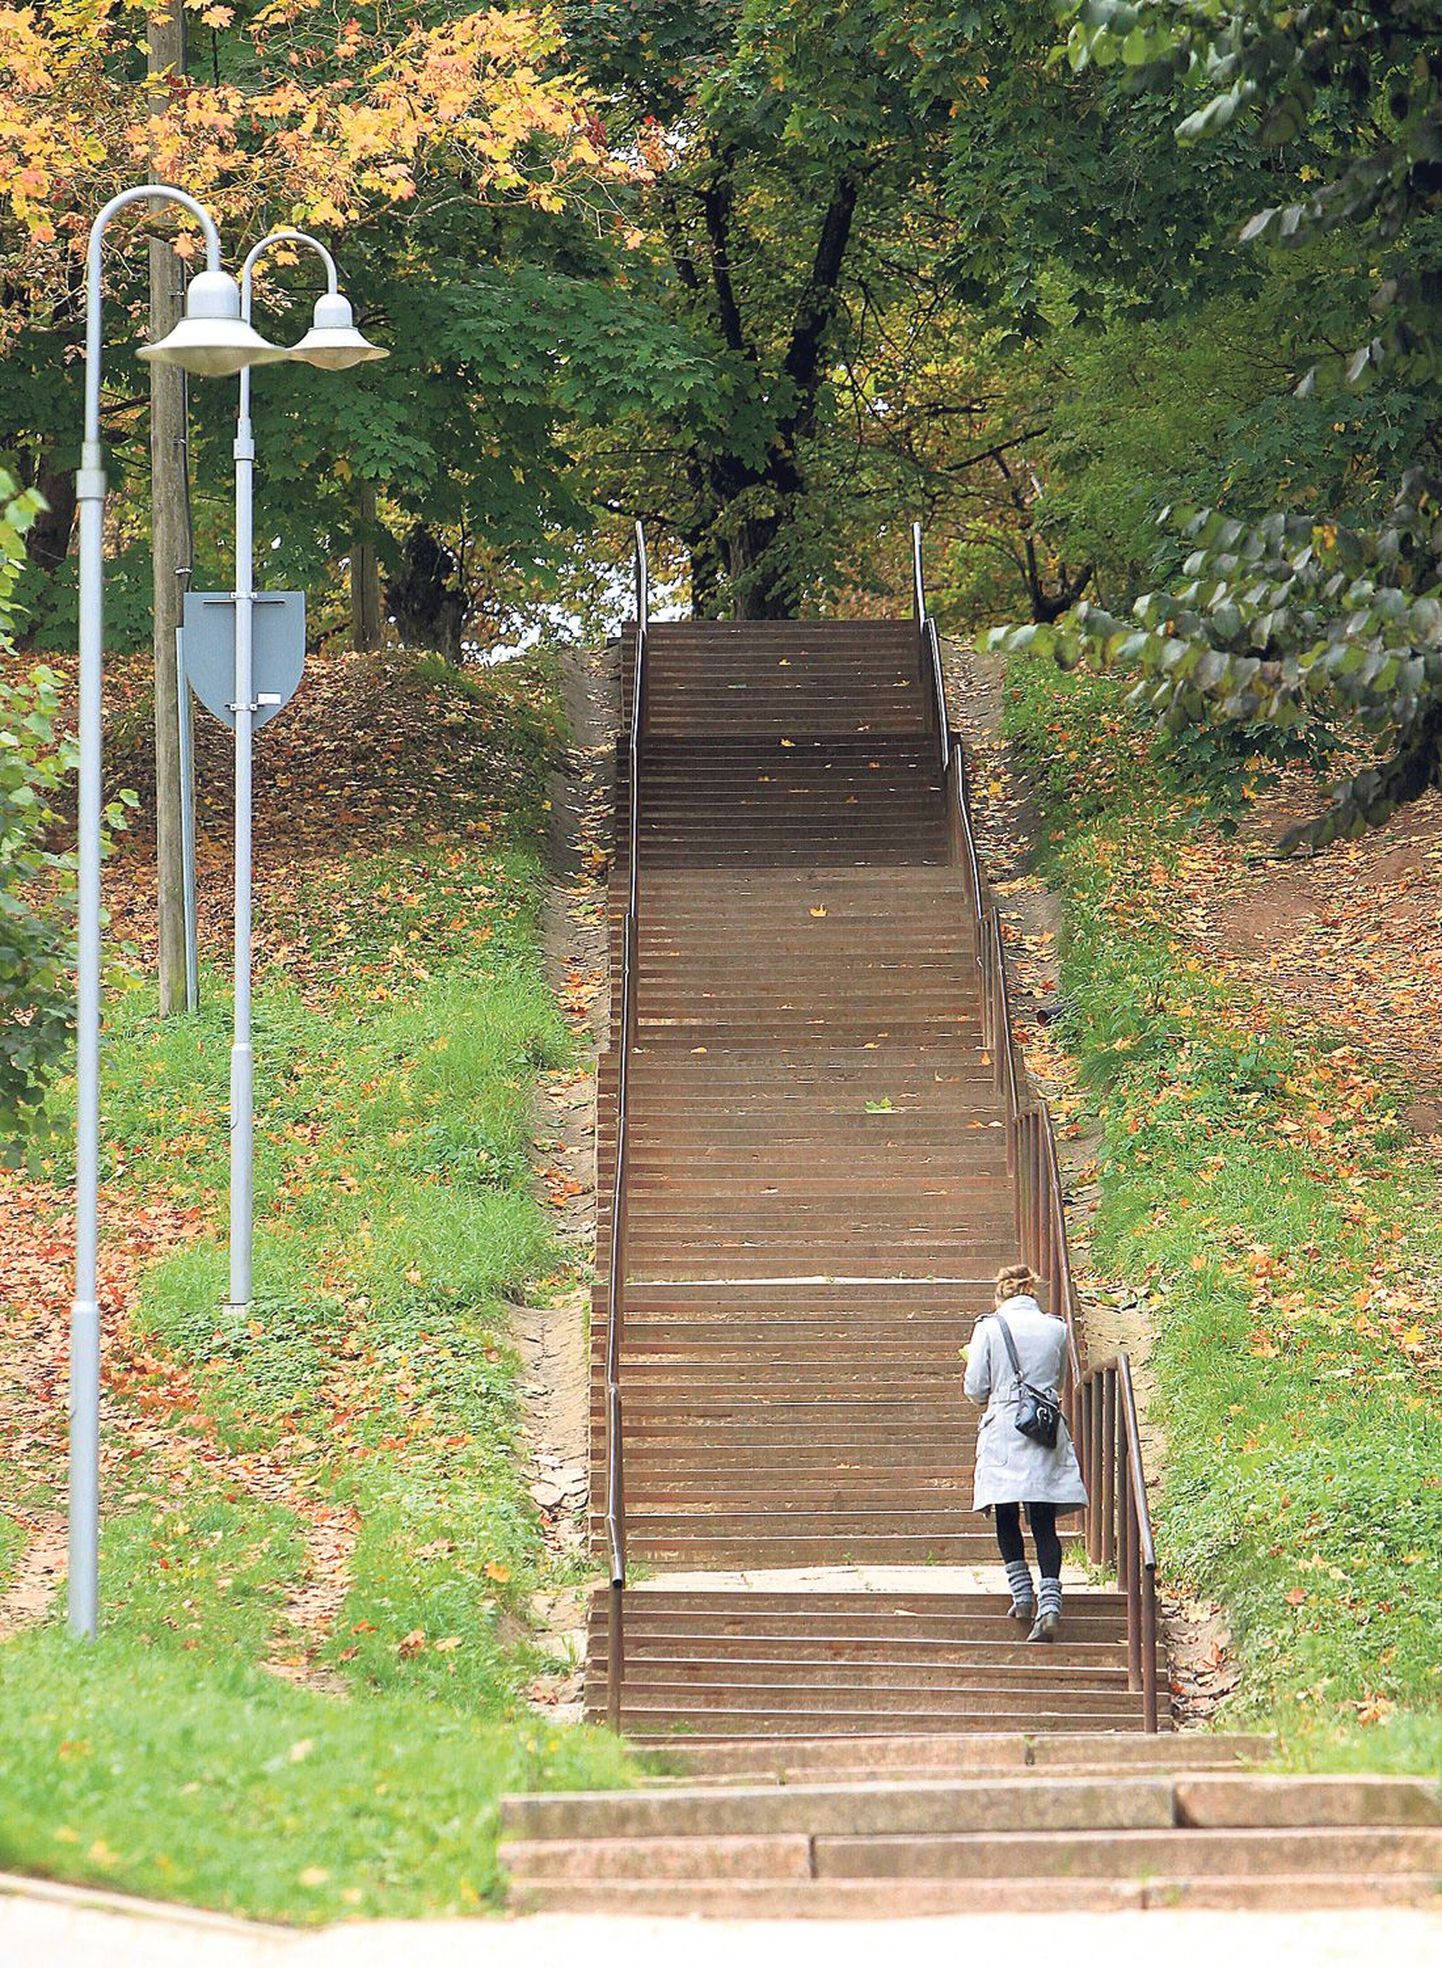 Supilinna selts ja kohalikud tahavad Marja tänava treppide kõrvale rajada võrdlemisi järsule mäenõlvale betoonist või metallist kaldpinna, kus saaks lükata vankrit või sõita rattaga.